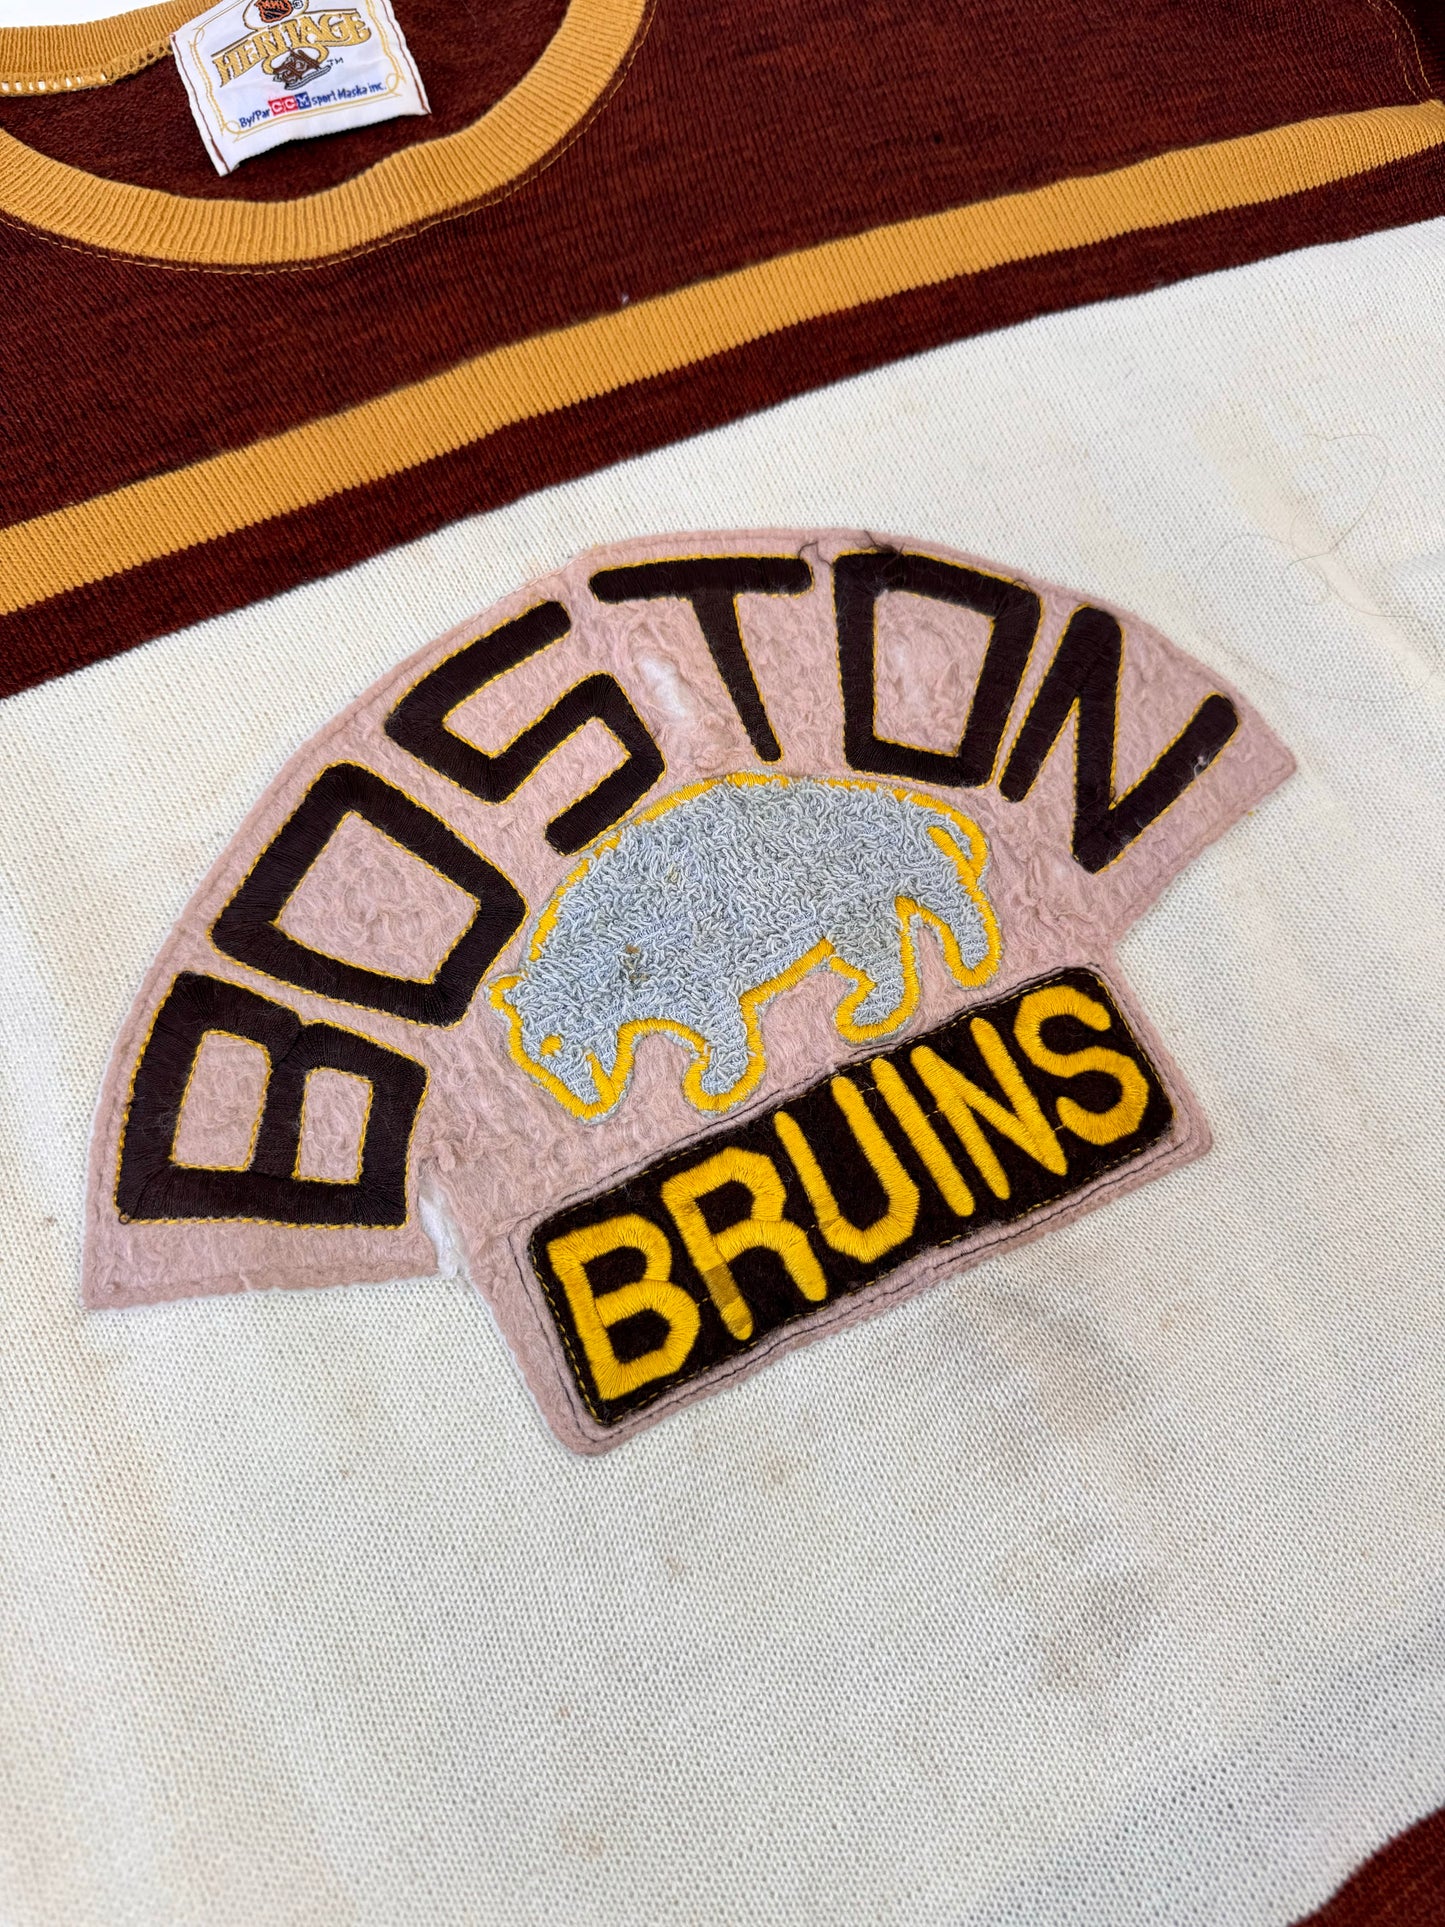 Boston Bruins 1928 Wool Sweater NHL Hockey Jersey (Large)